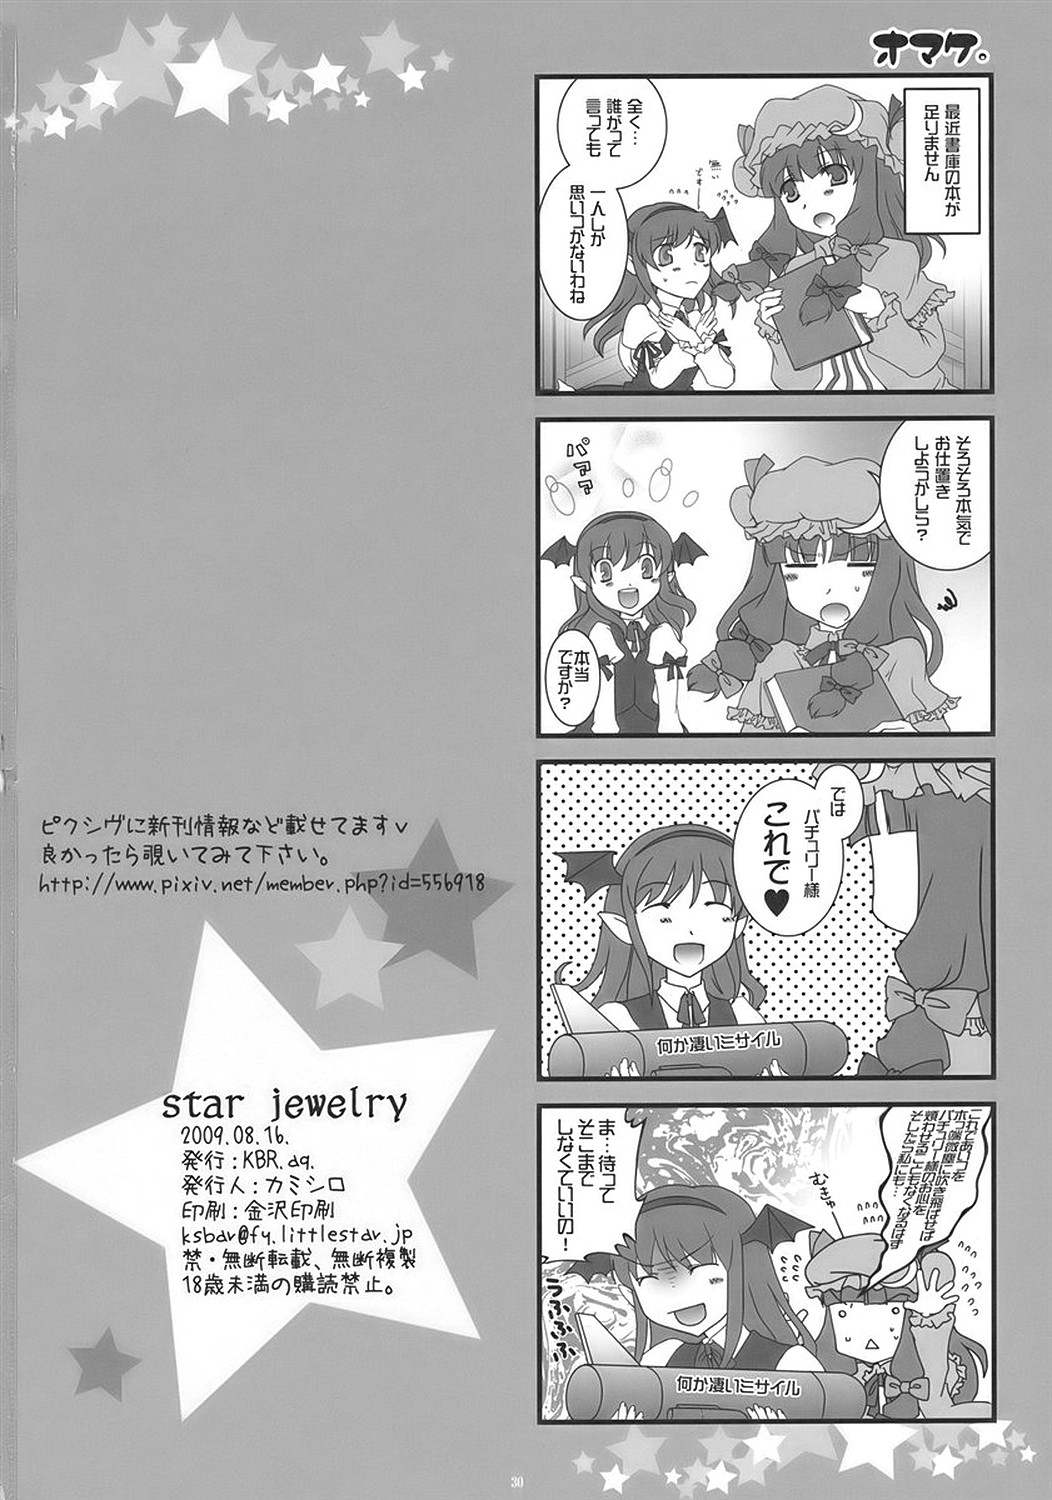 (C76) [KBR.aq. (Kamishiro)] STAR JEWELRY (Touhou Project) page 30 full